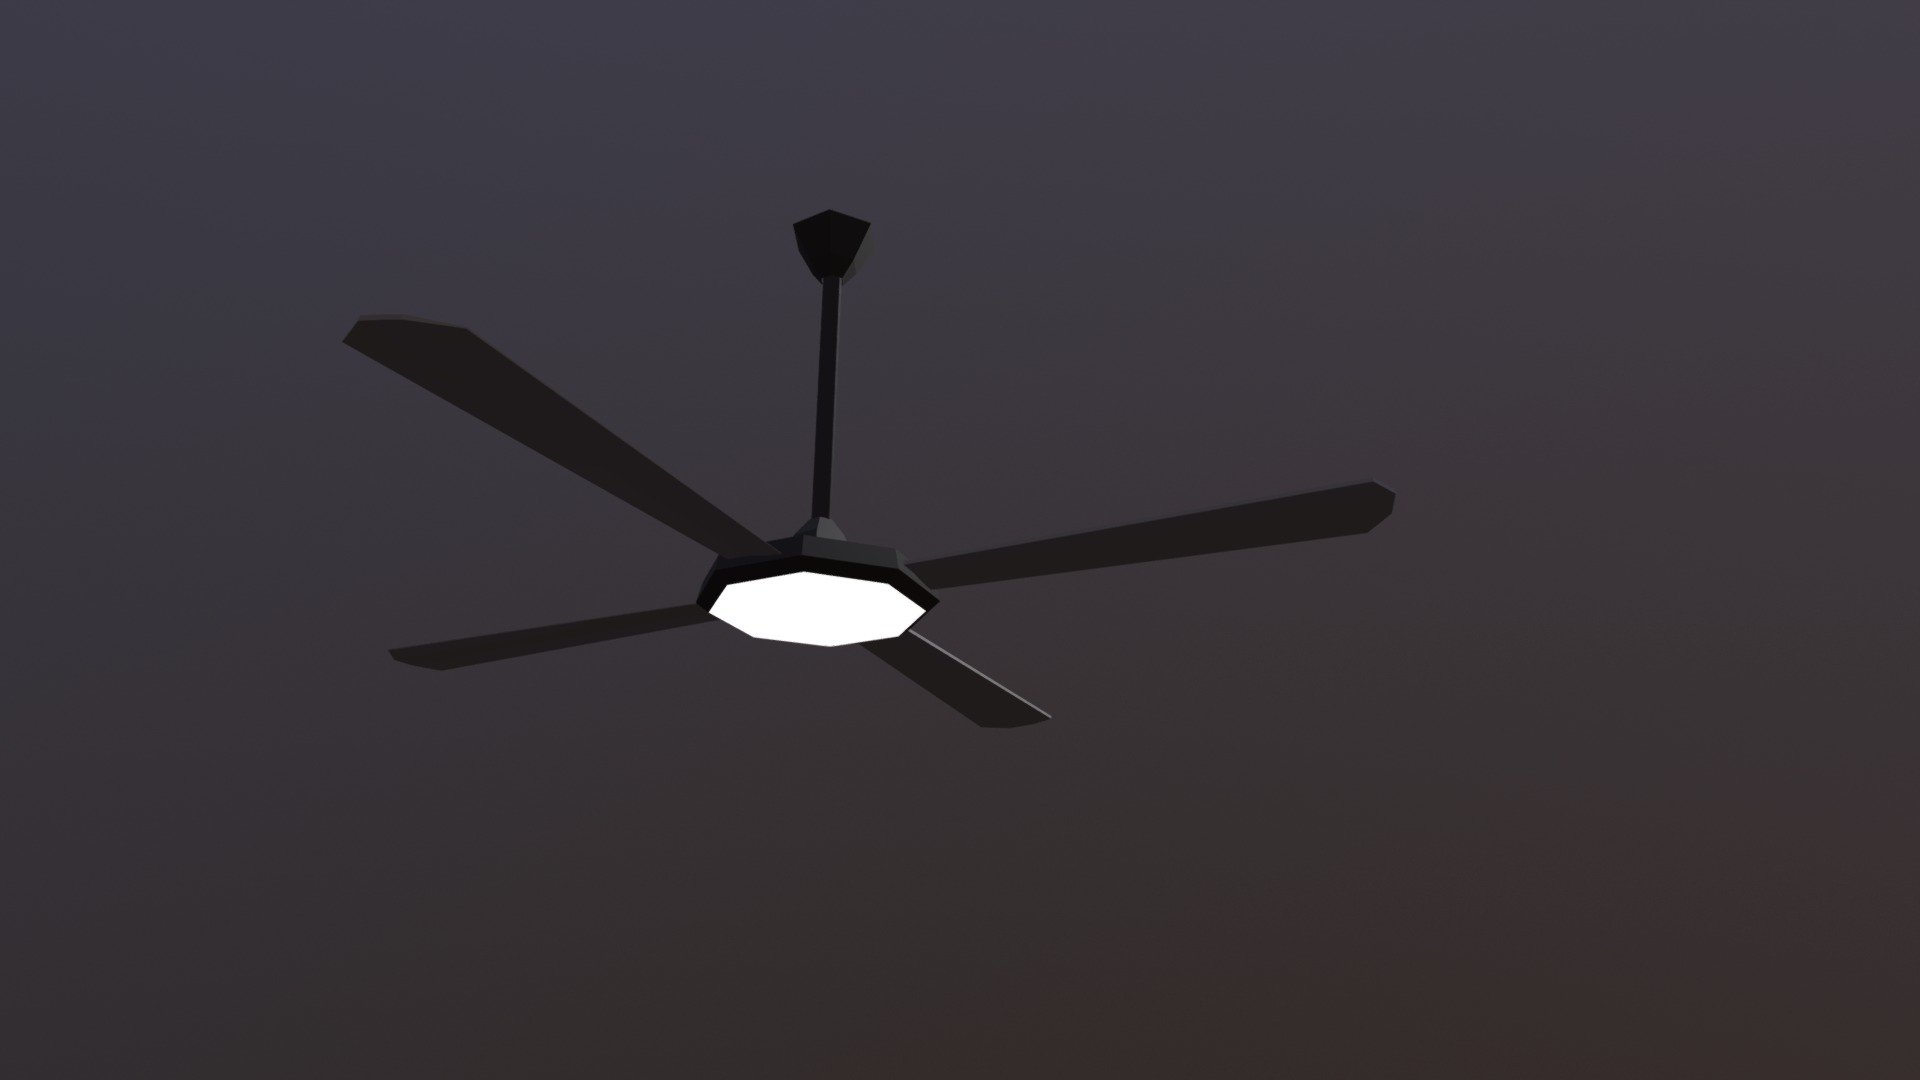 ceiling fan model 5745 parts